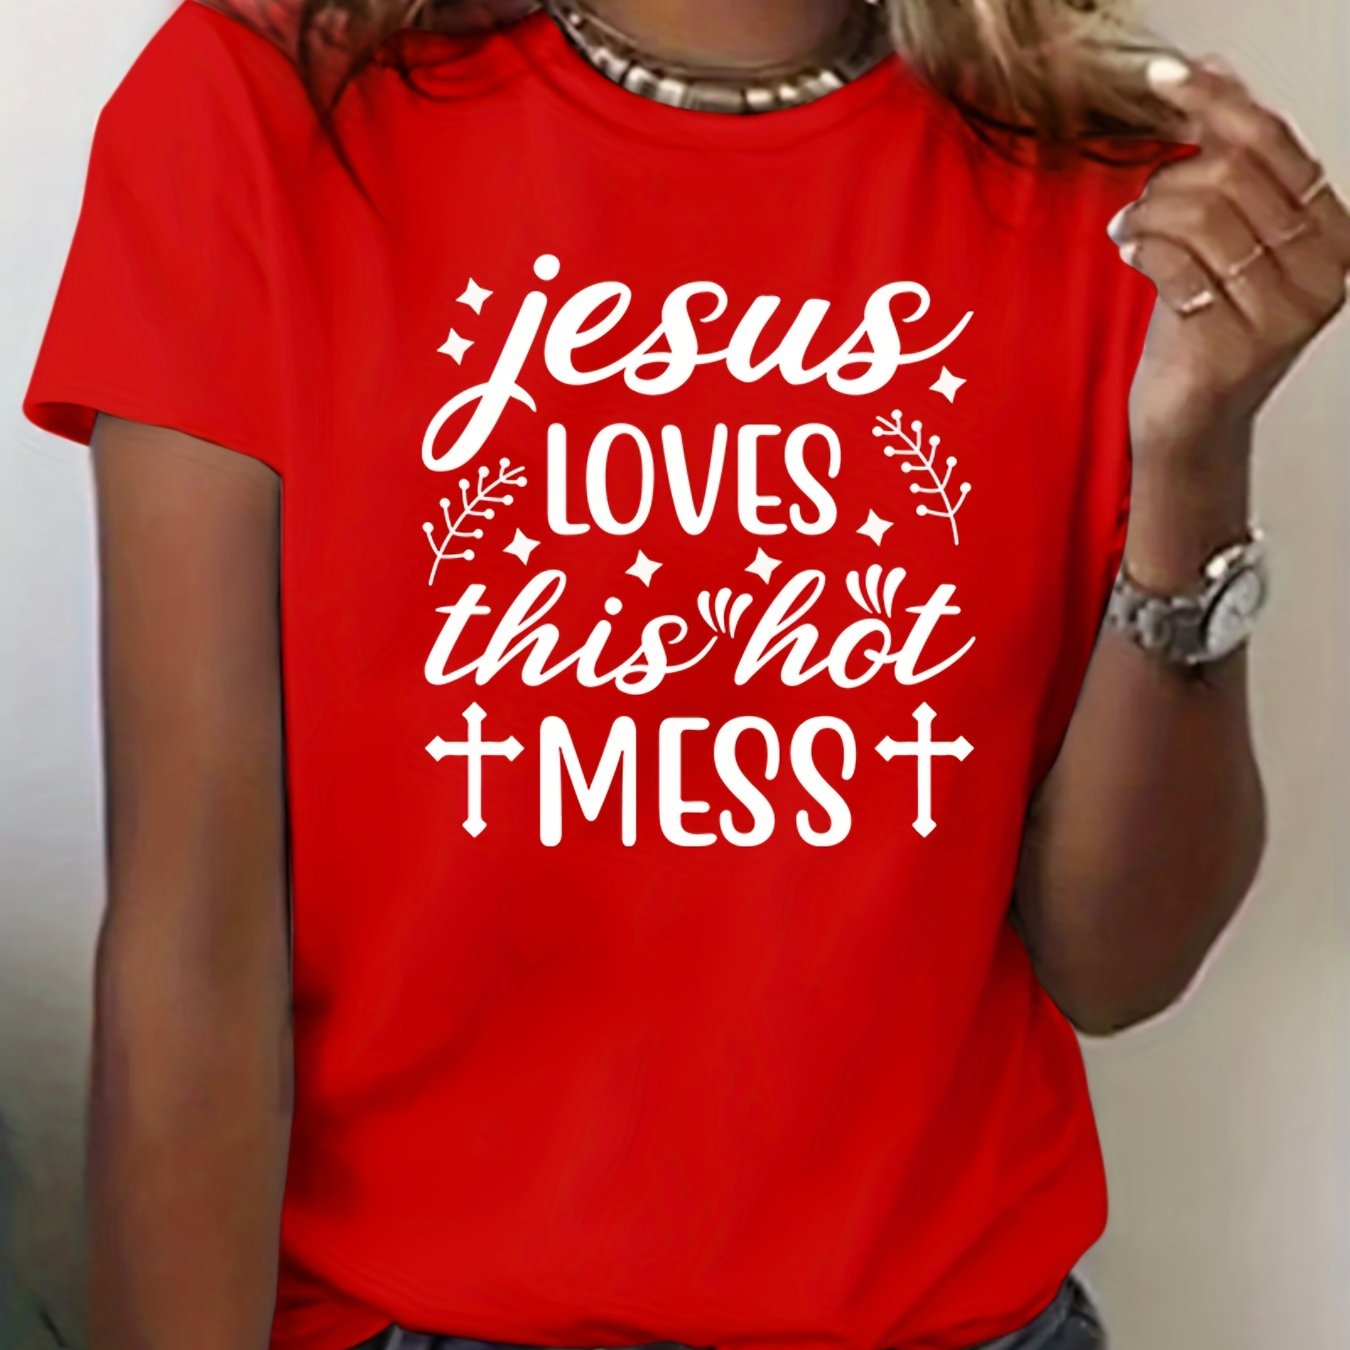 Jesus Loves This Hot Mess Women's Christian T-Shirt claimedbygoddesigns